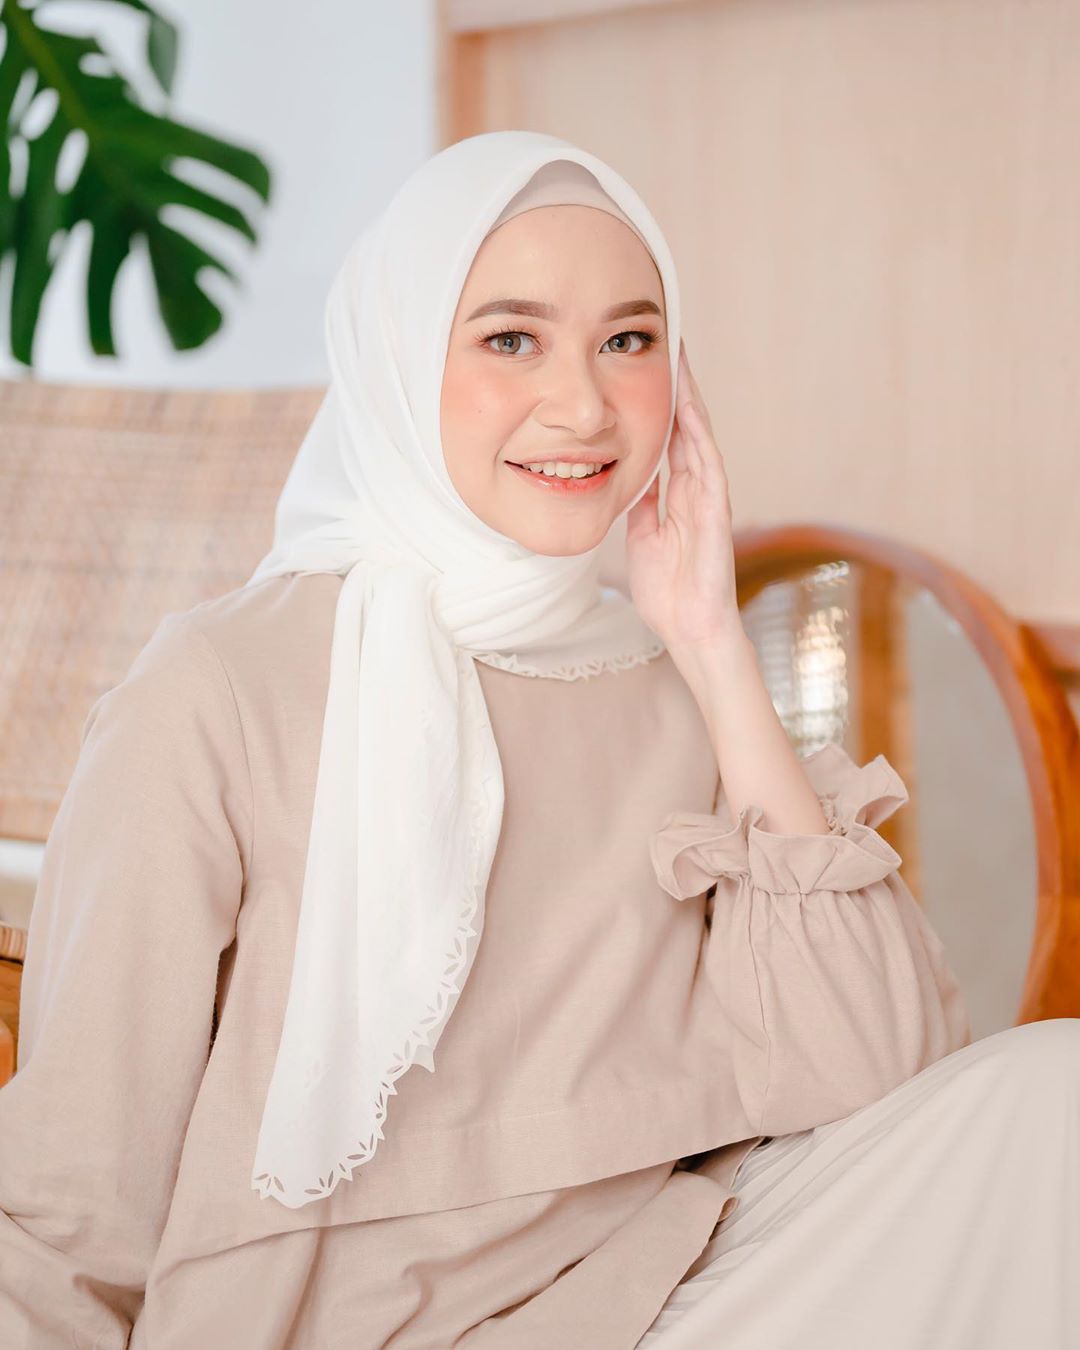 Apa warna jilbab baju cocok putih Baju Biru